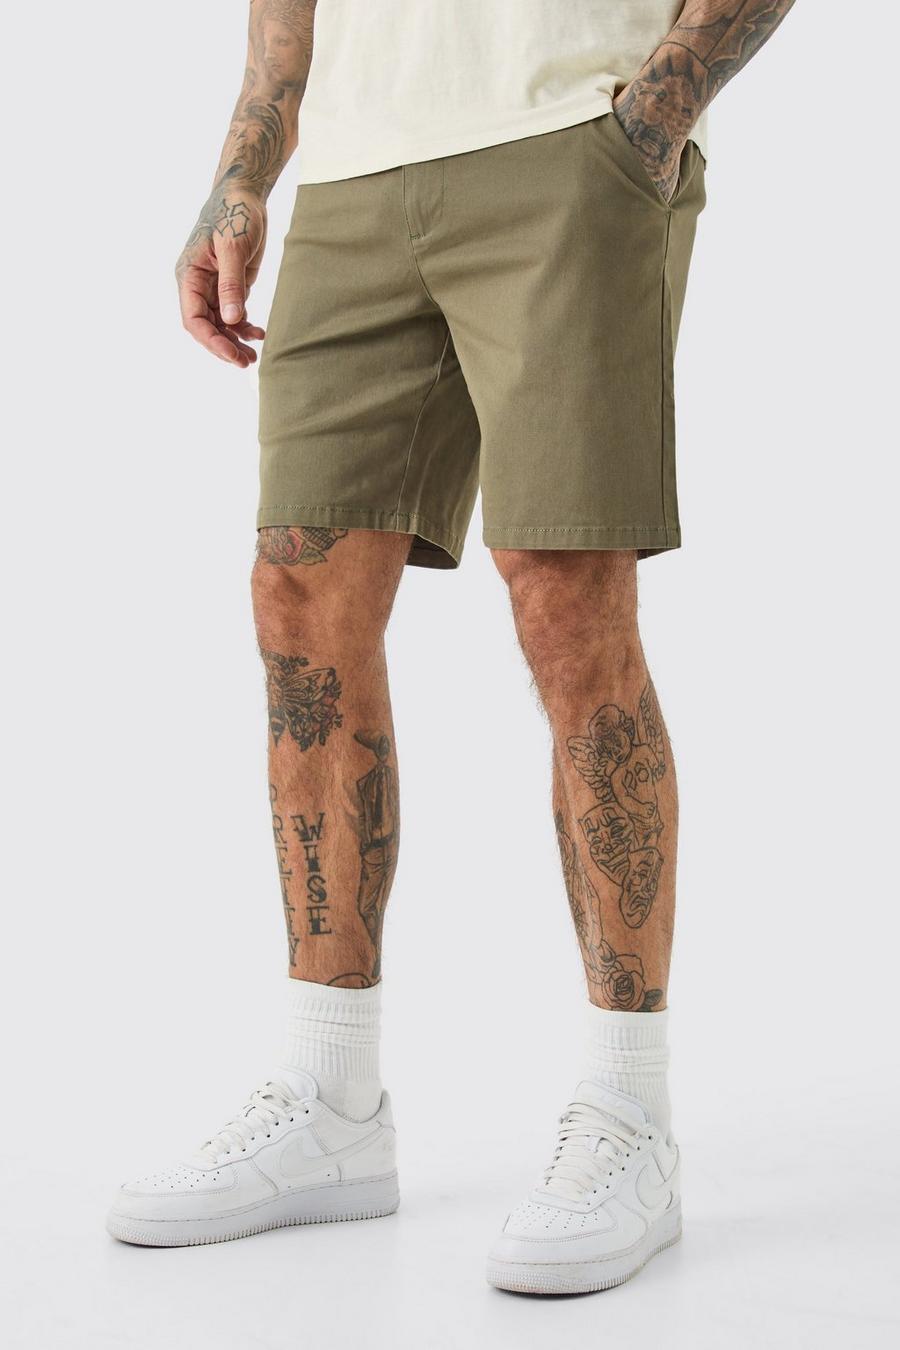 Pantalones cortos Tall chinos ajustados con cintura fija en color caqui, Khaki